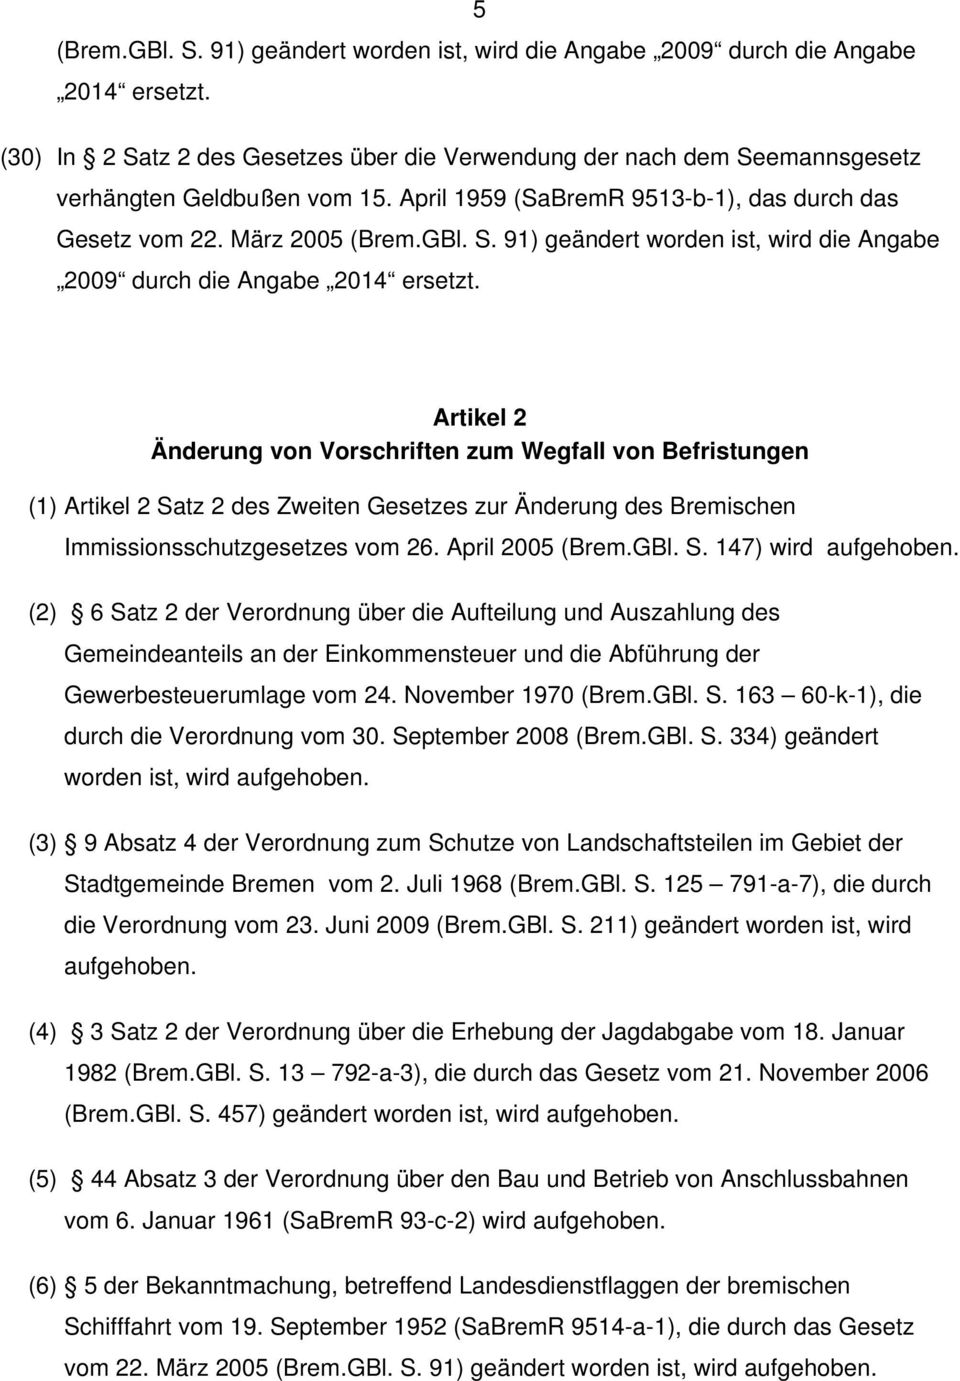 Artikel 2 Änderung von Vorschriften zum Wegfall von Befristungen (1) Artikel 2 Satz 2 des Zweiten Gesetzes zur Änderung des Bremischen Immissionsschutzgesetzes vom 26. April 2005 (Brem.GBl. S. 147) wird aufgehoben.